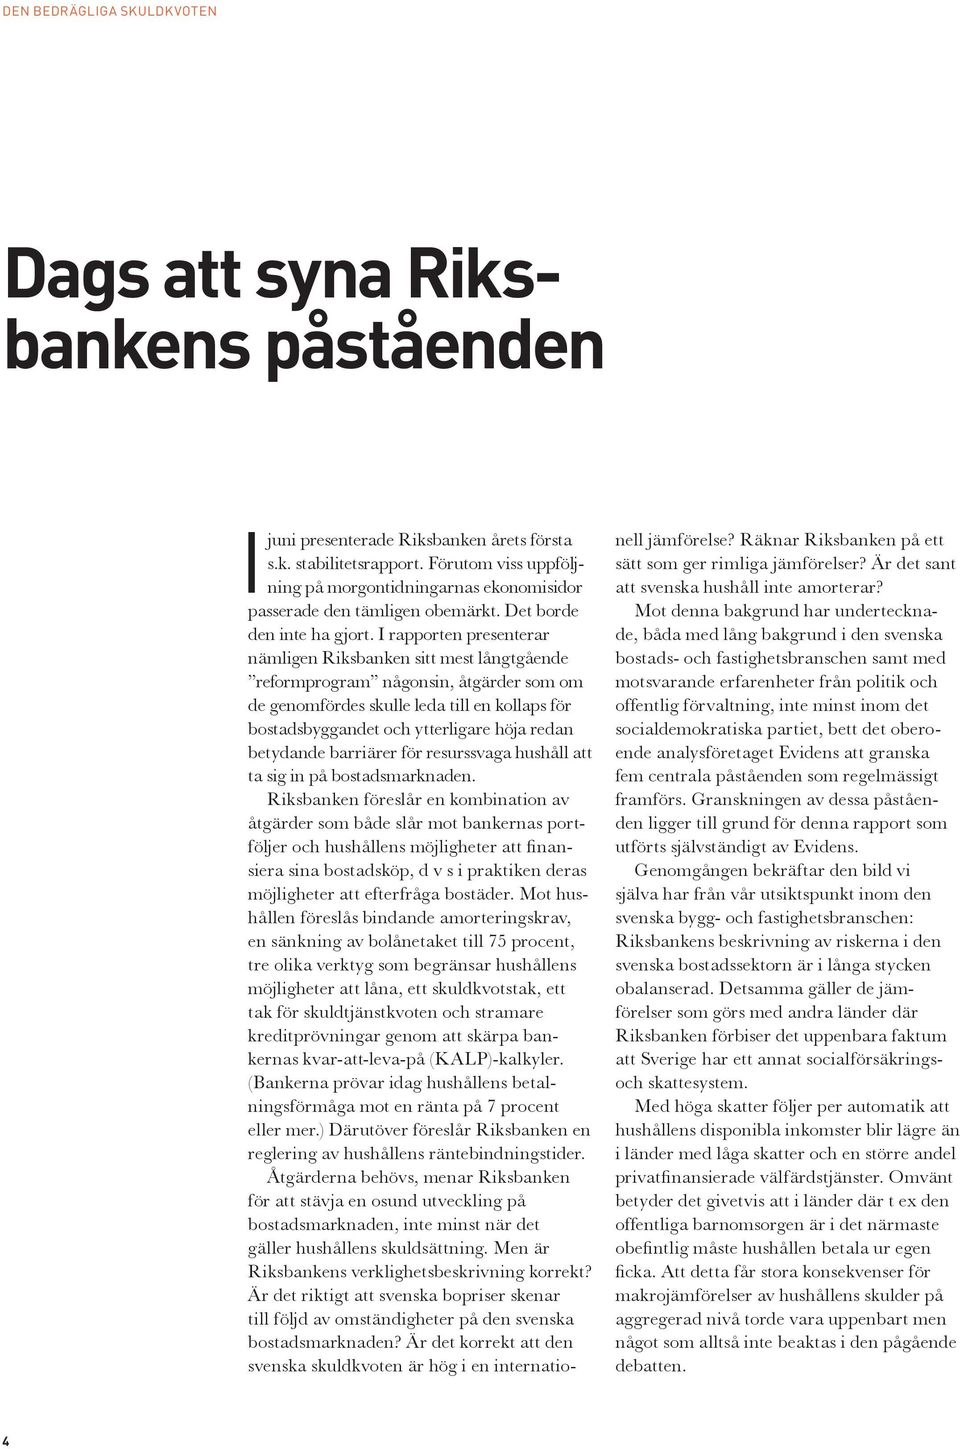 I rapporten presenterar nämligen Riksbanken sitt mest långtgående reformprogram någonsin, åtgärder som om de genomfördes skulle leda till en kollaps för bostadsbyggandet och ytterligare höja redan